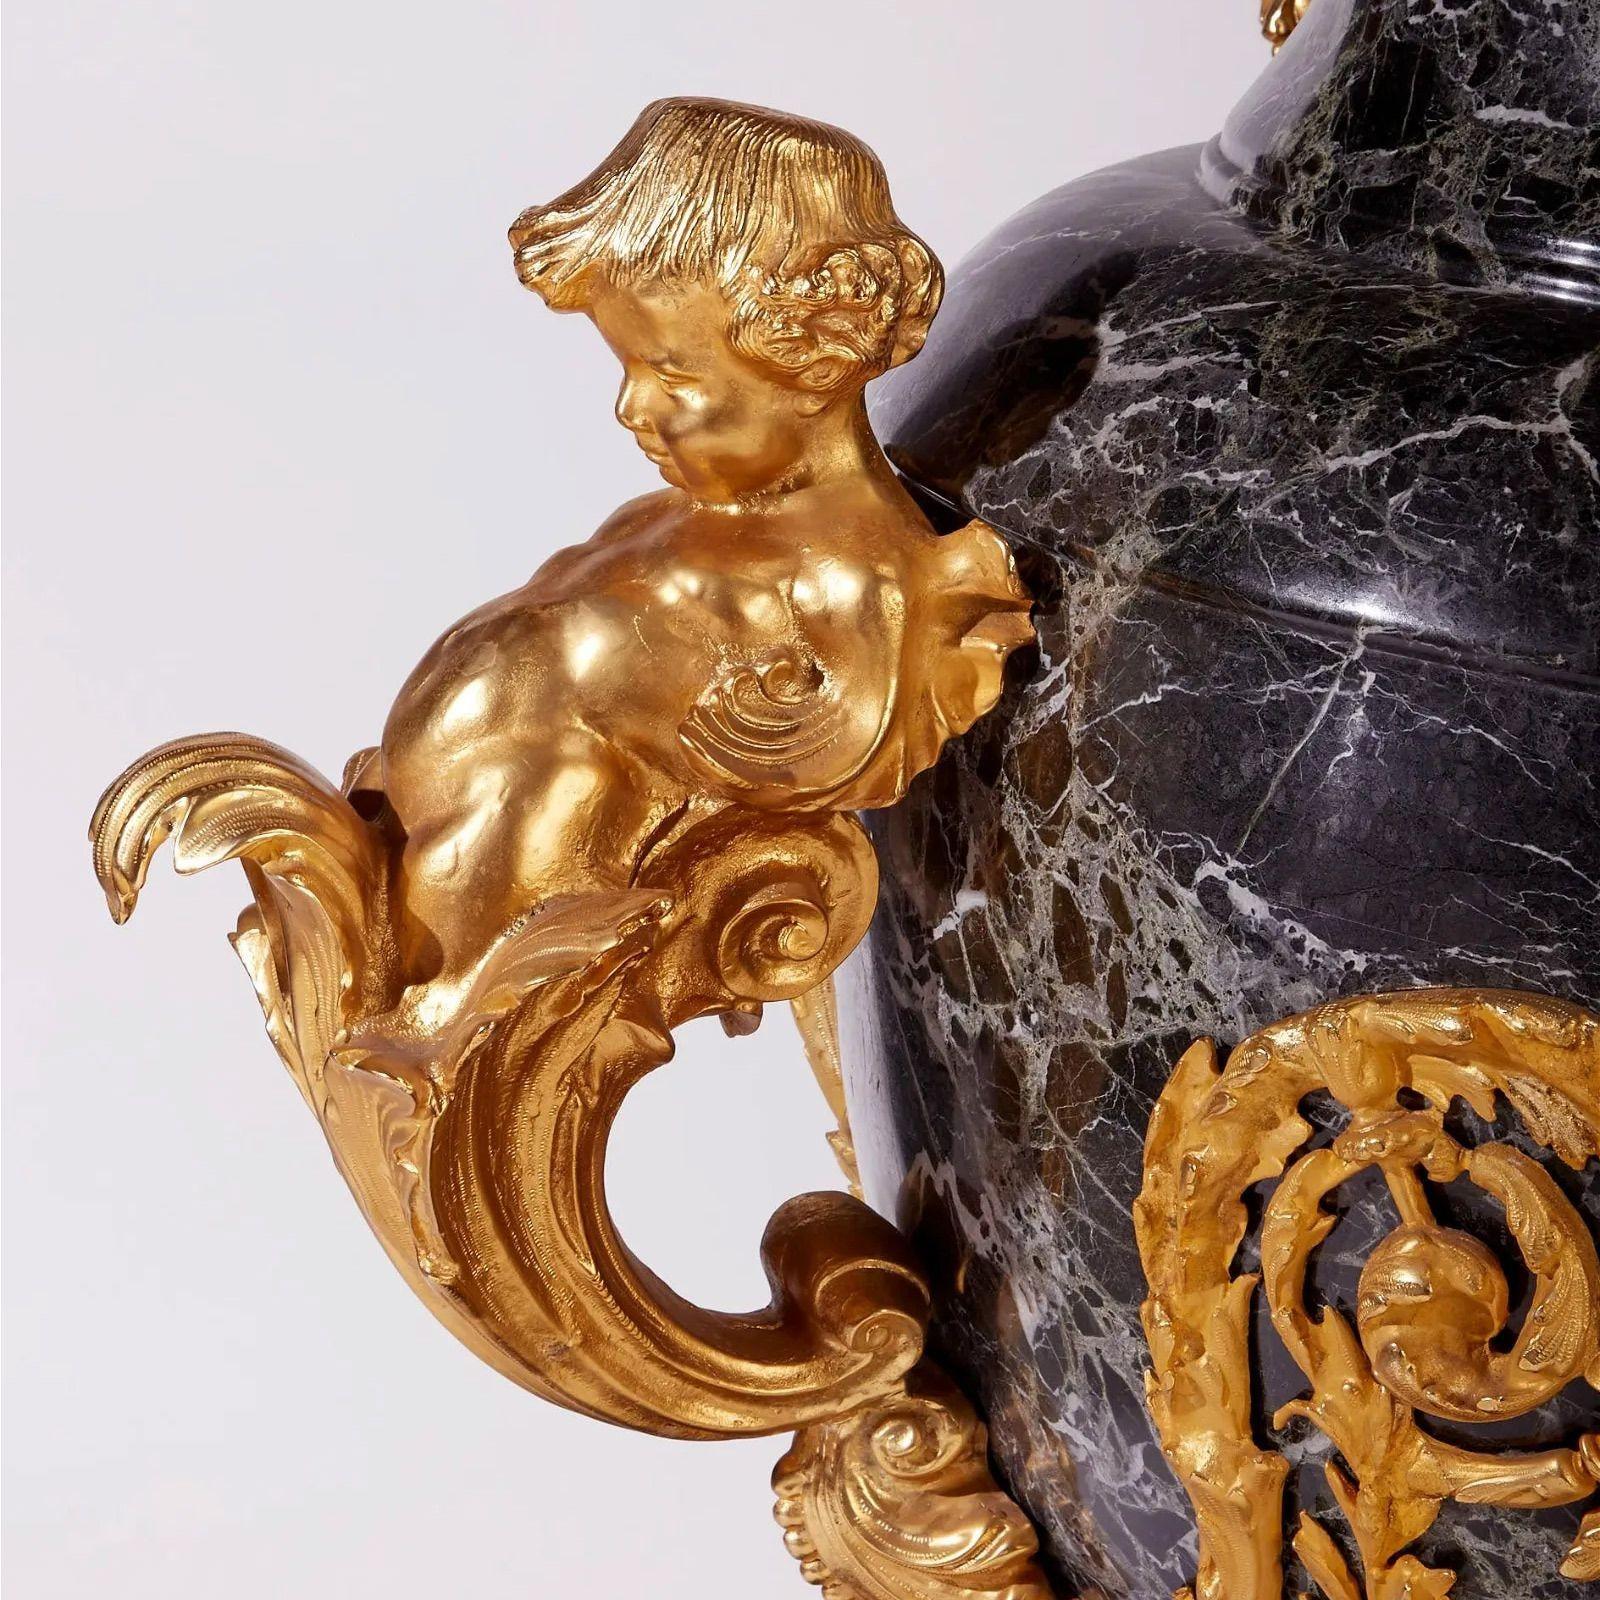 Paire d'urnes de sol en marbre et bronze doré, fin du XIXe siècle

Dans le style de la Russie impériale, une paire d'urnes en marbre noir ornées de figures de putti en bronze doré
2 pièces
 
Dimensions

55